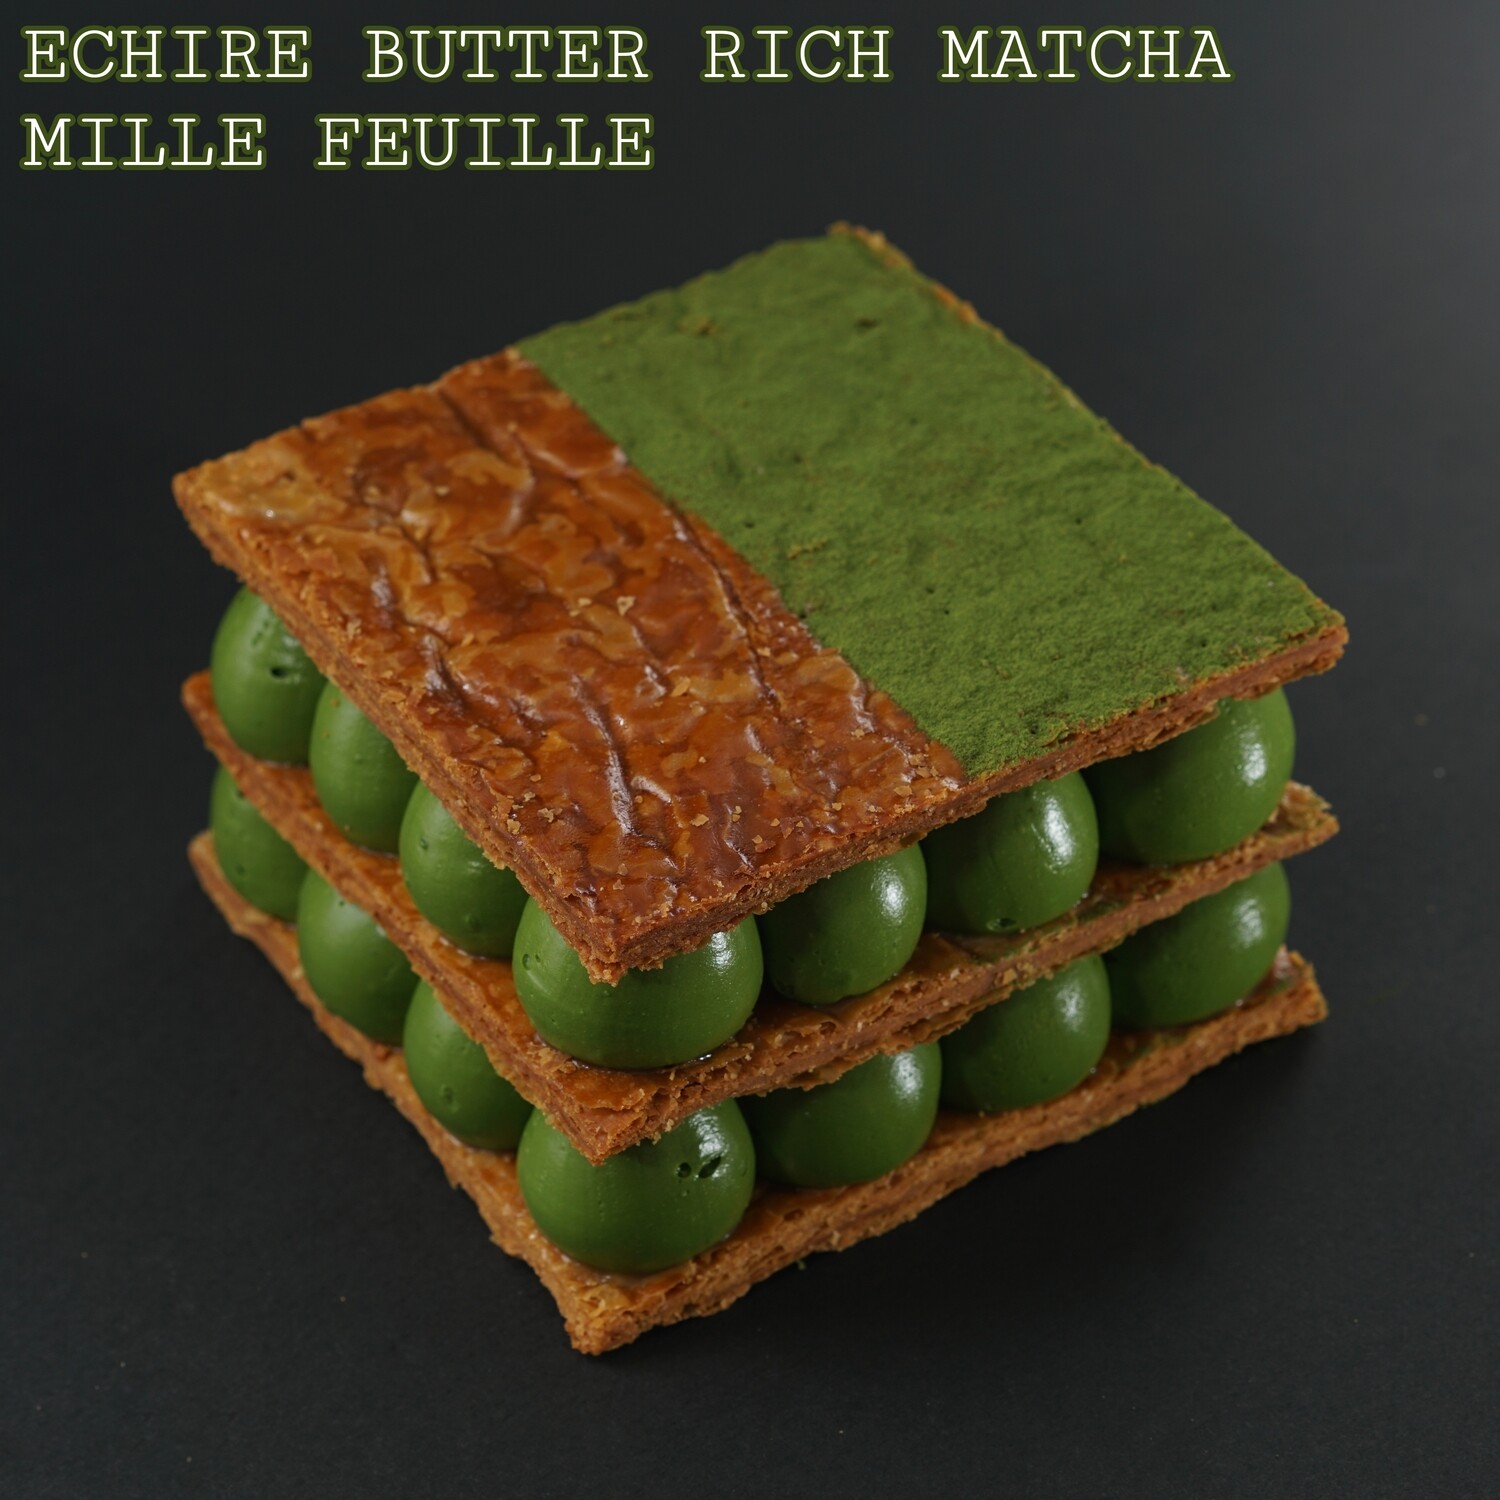 Echire 牛油濃厚抹茶拿破崙/Echire Butter Rich Matcha Mille Feuille